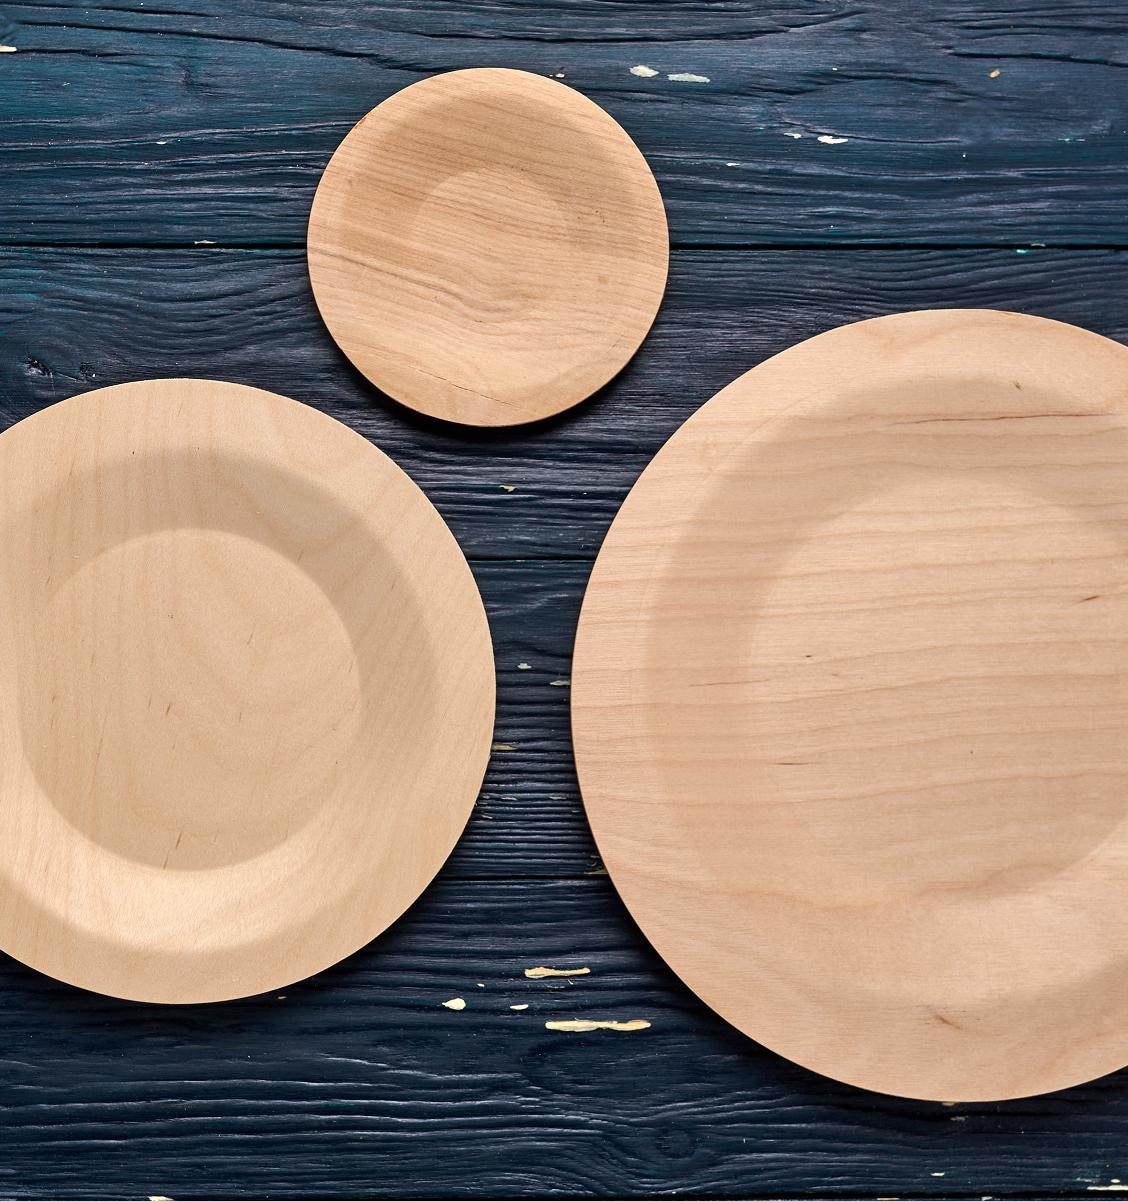 Одноразовая посуда из березового шпона: преимущества и недостатки